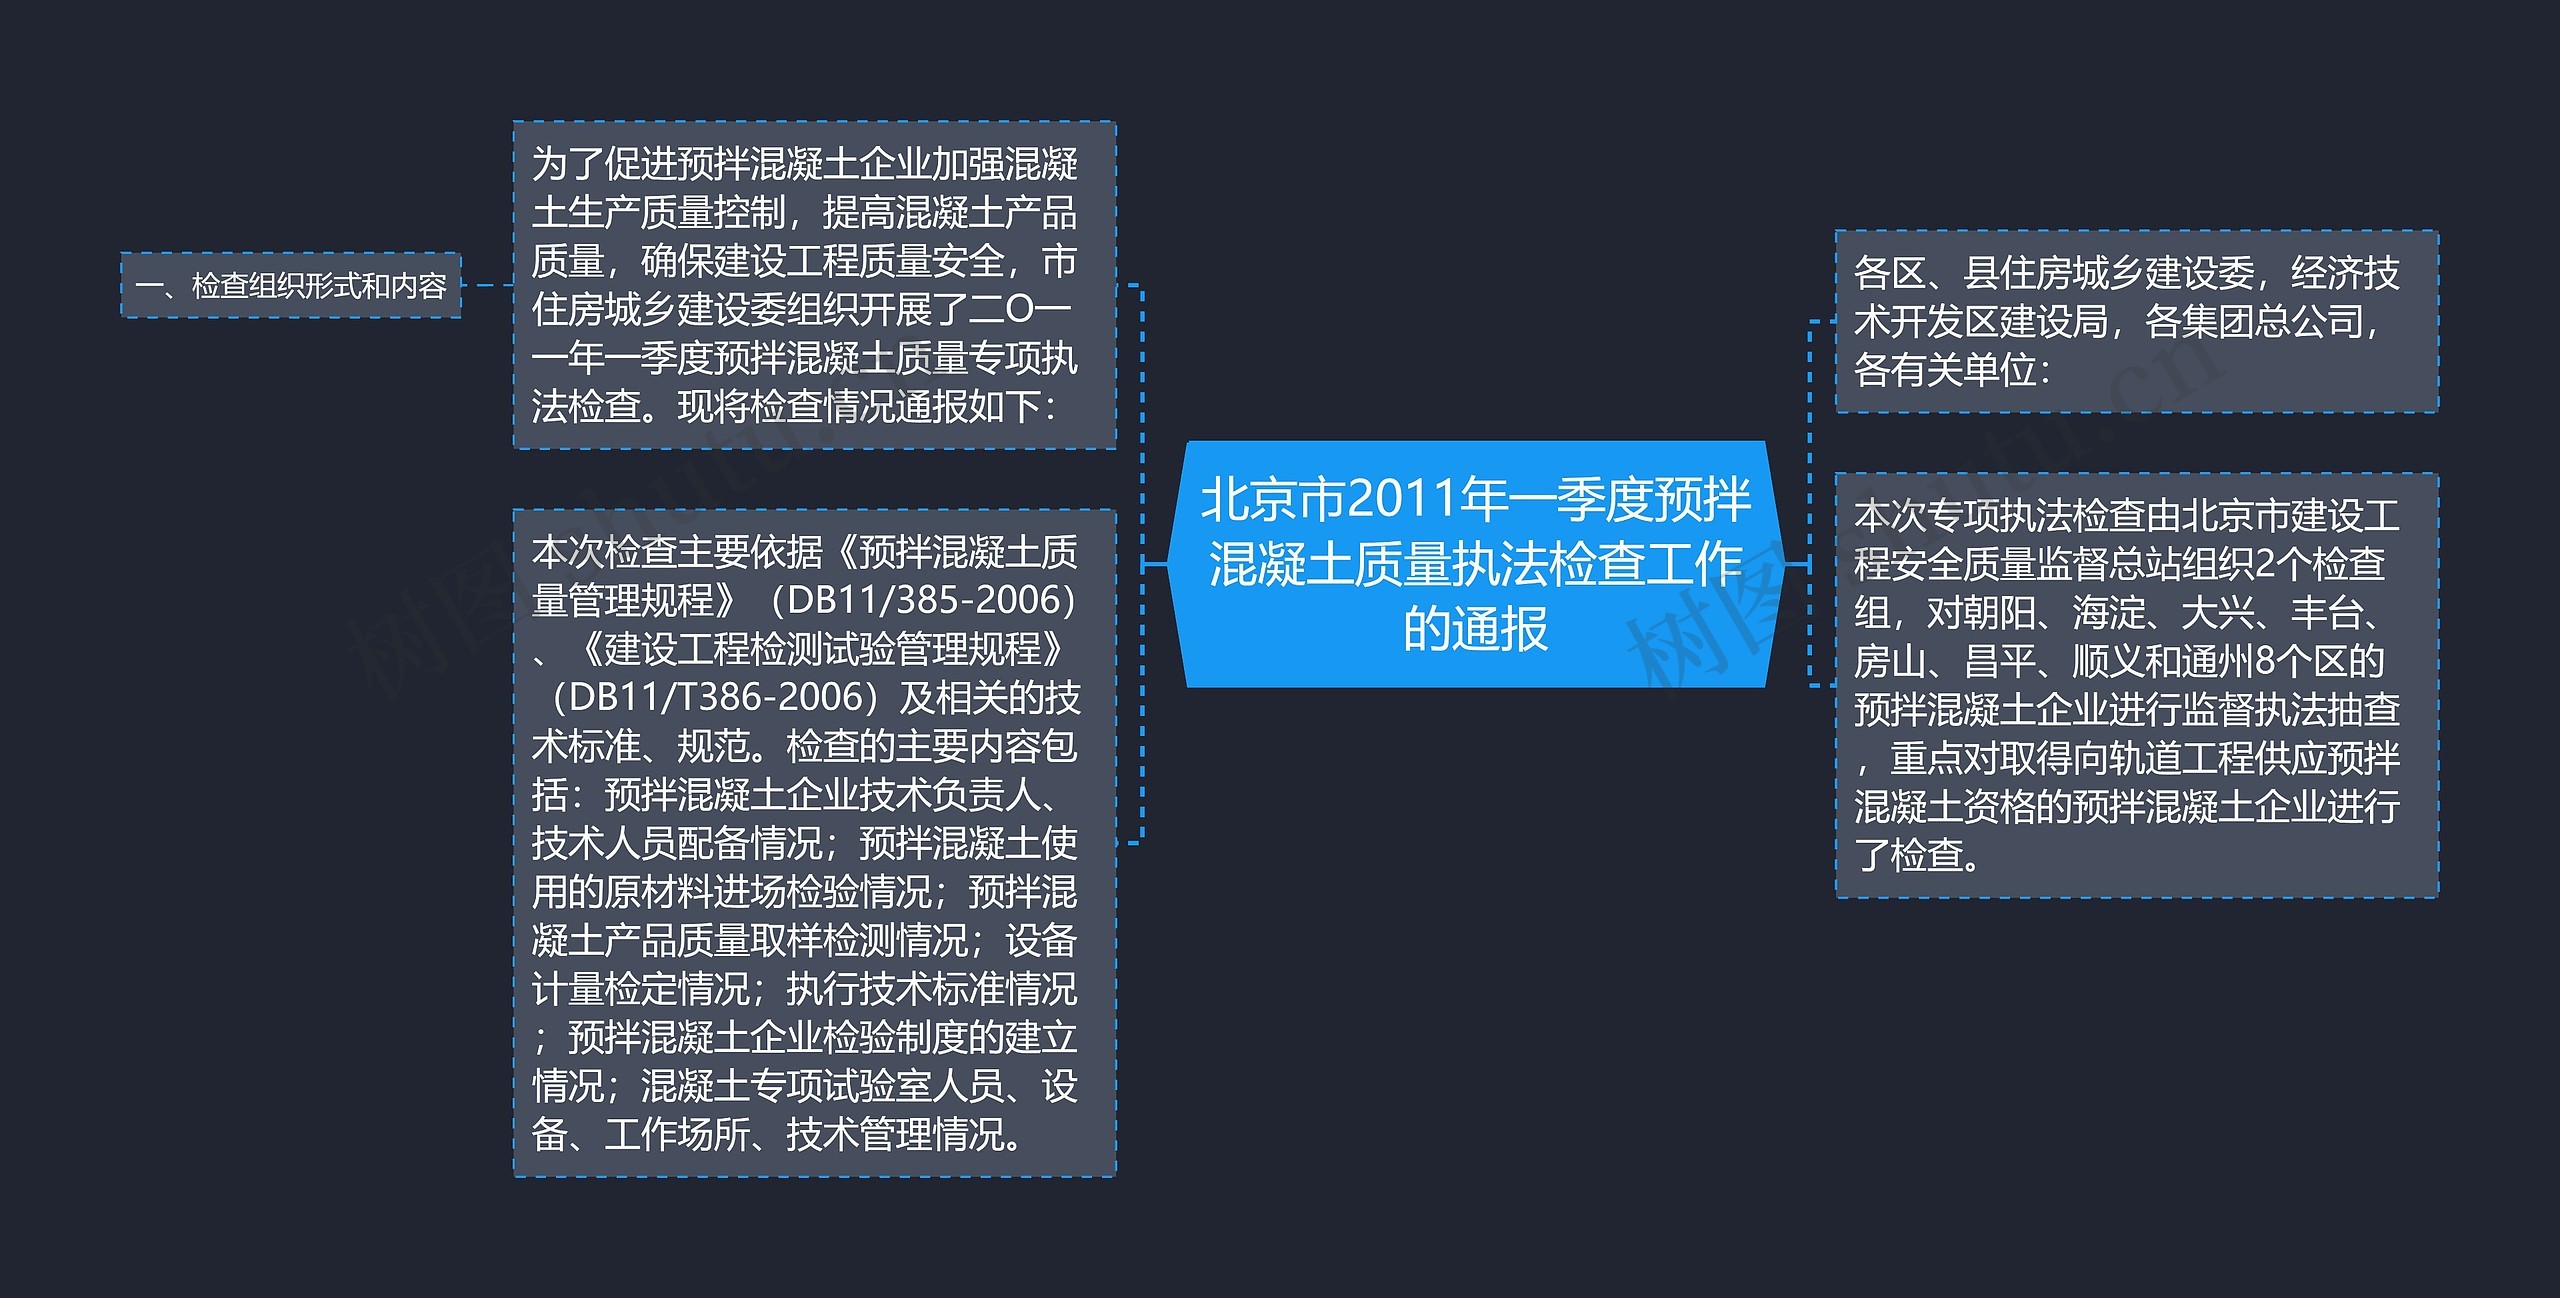 北京市2011年一季度预拌混凝土质量执法检查工作的通报思维导图